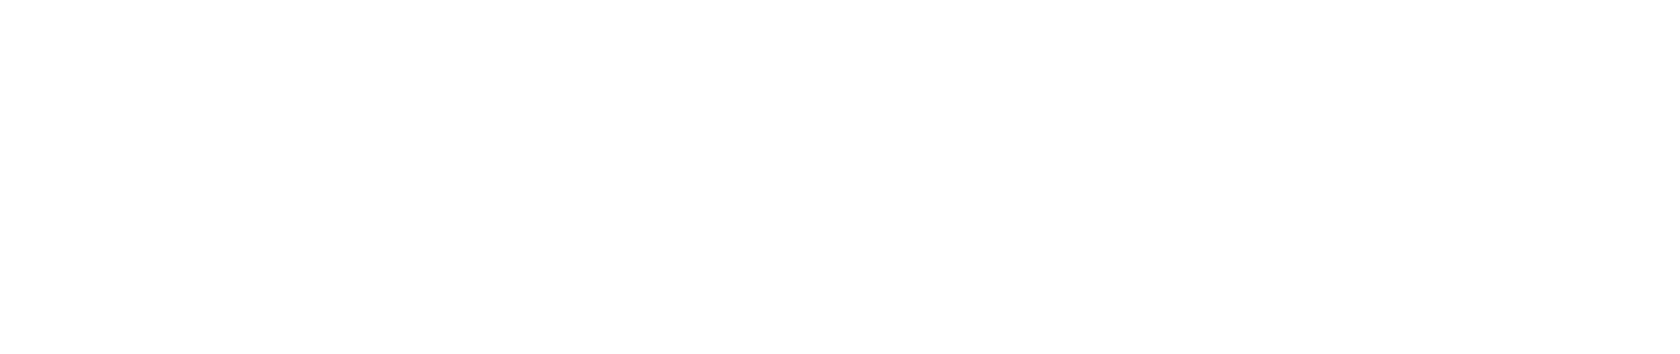 Prudential Financial logo grand pour les fonds sombres (PNG transparent)